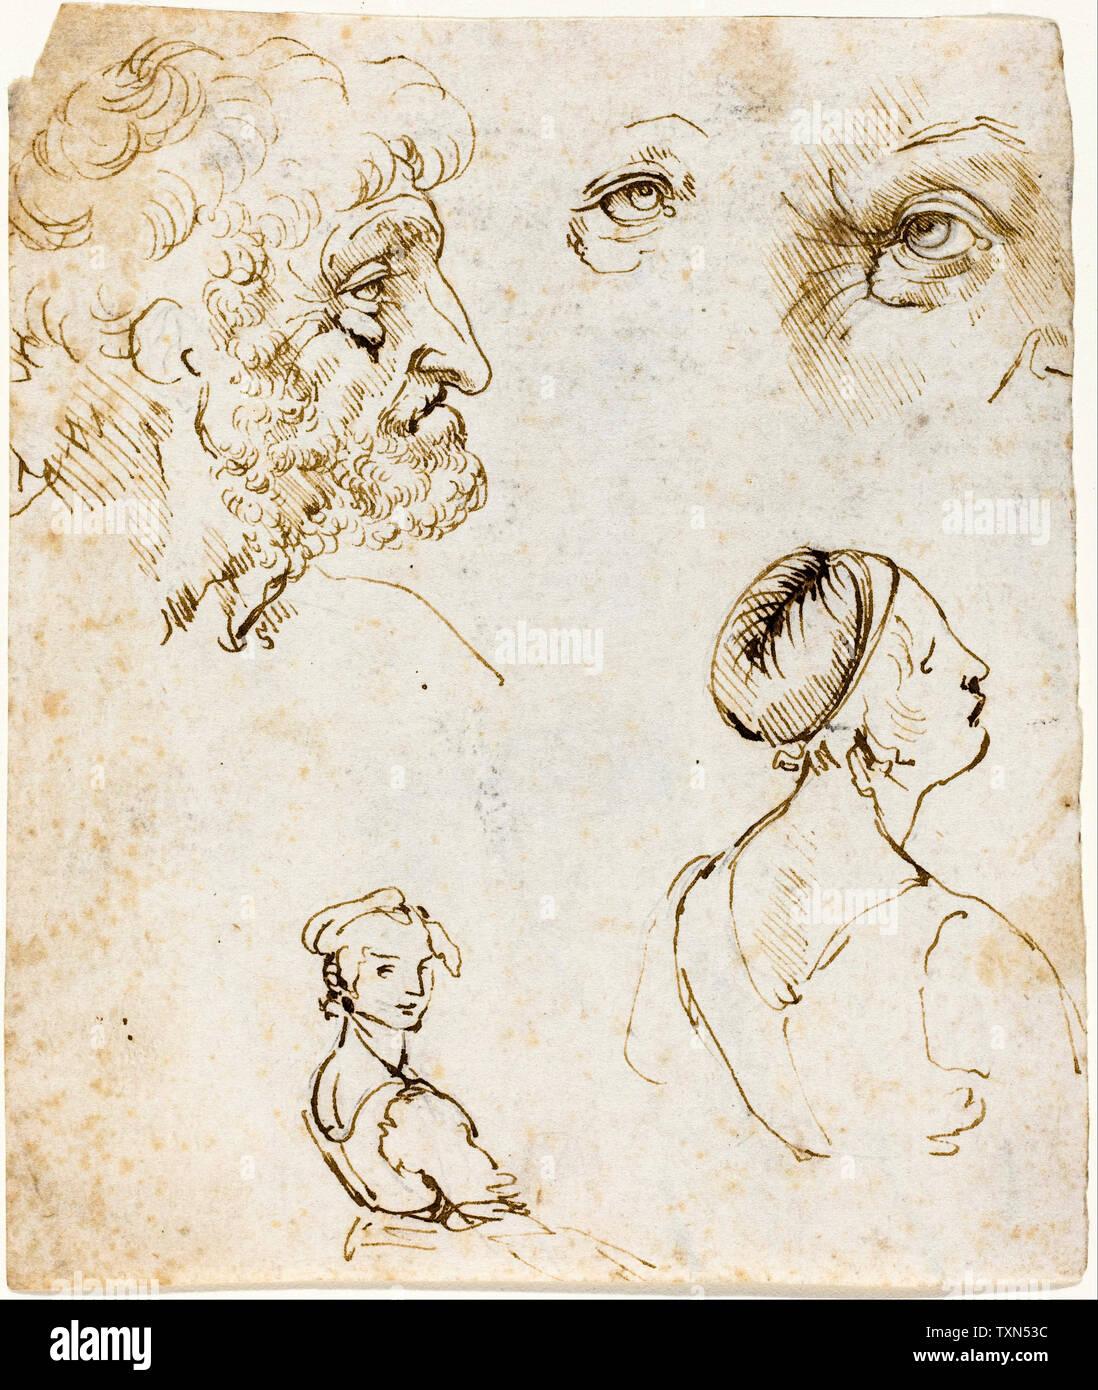 Leonardo Da Vinci, feuille d'études, dessin, vers 1470 Banque D'Images